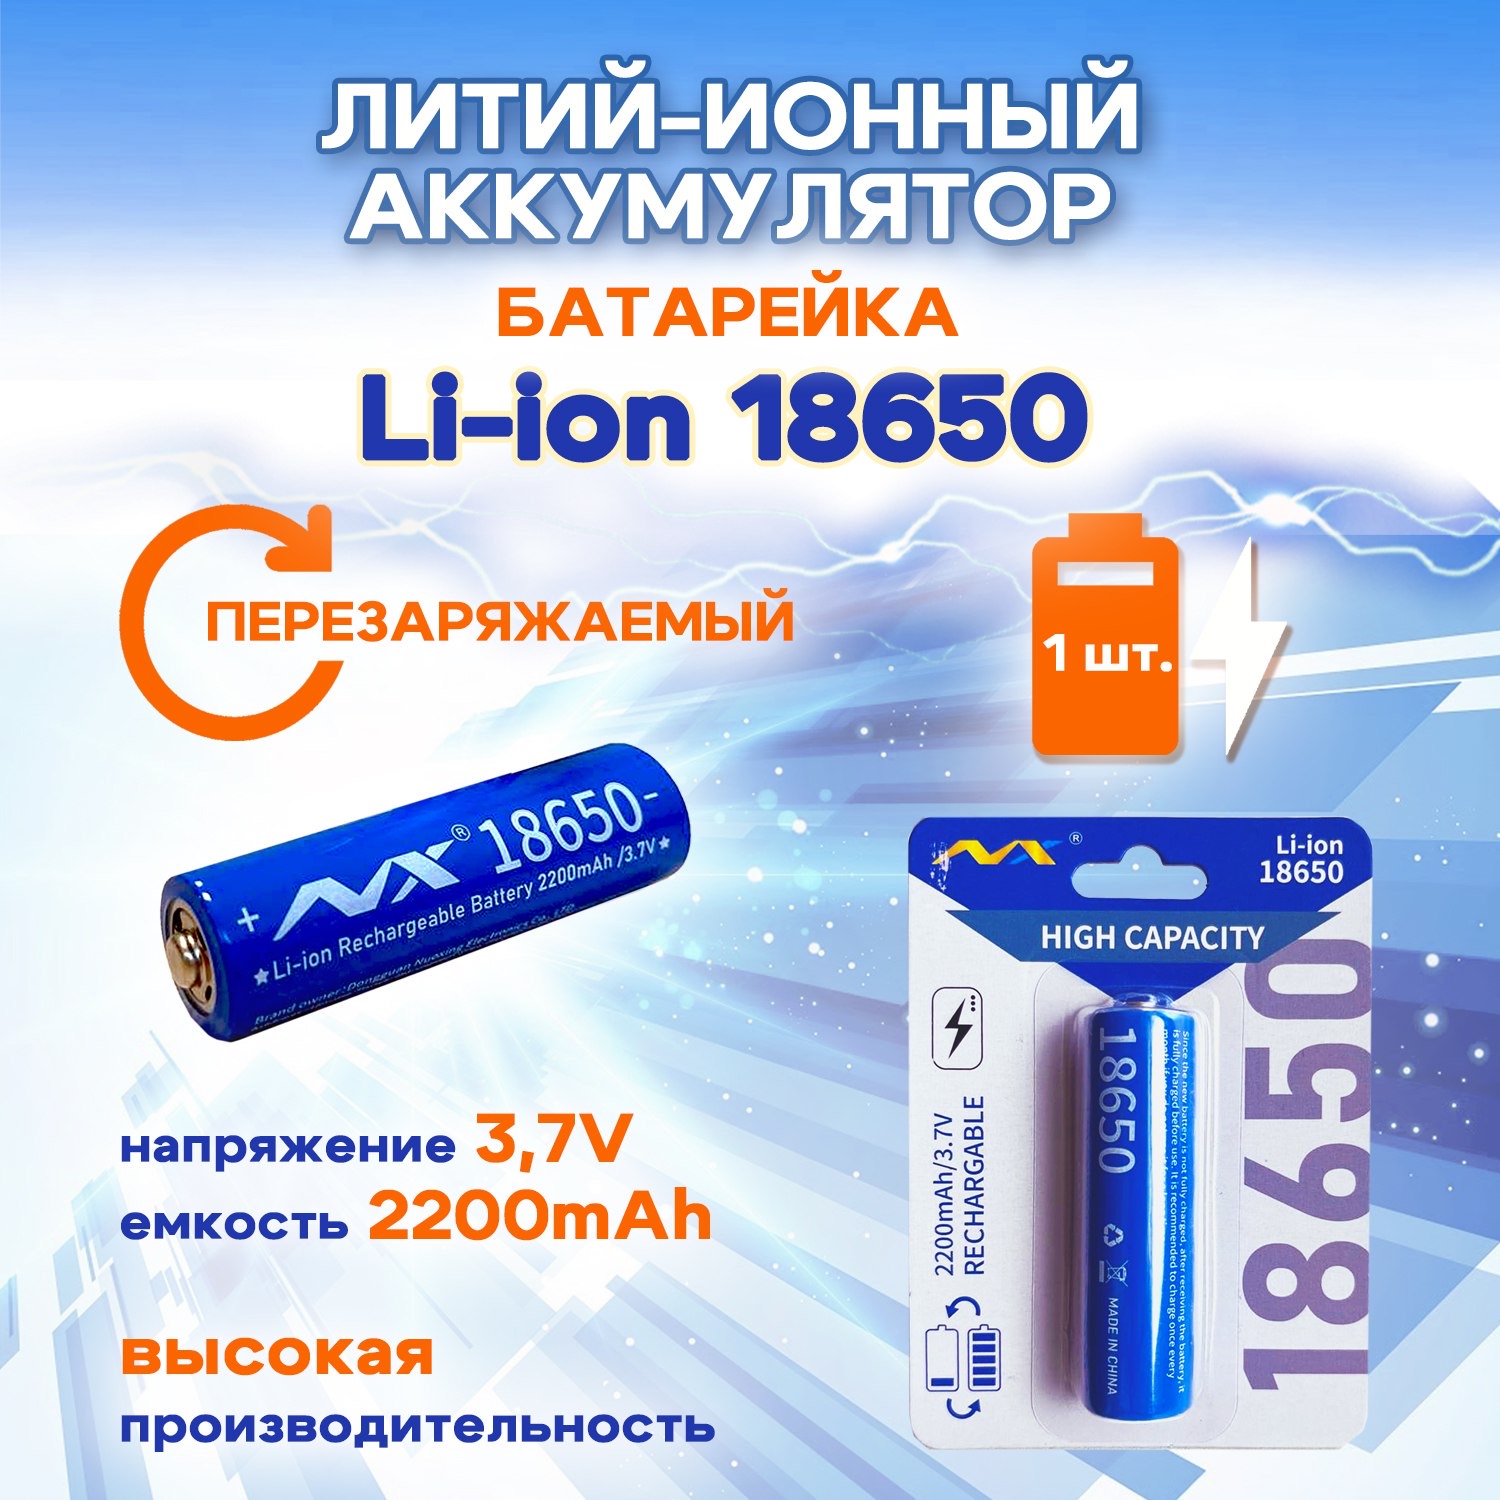 Батарейка-аккумулятор SUPER ENERGY 18650 3,7 В литий-ионный перезаряжаемый 2200 mAh, 1 шт аккумулятор 18650 высокотоковый lg m26 2600mah lggbm261865